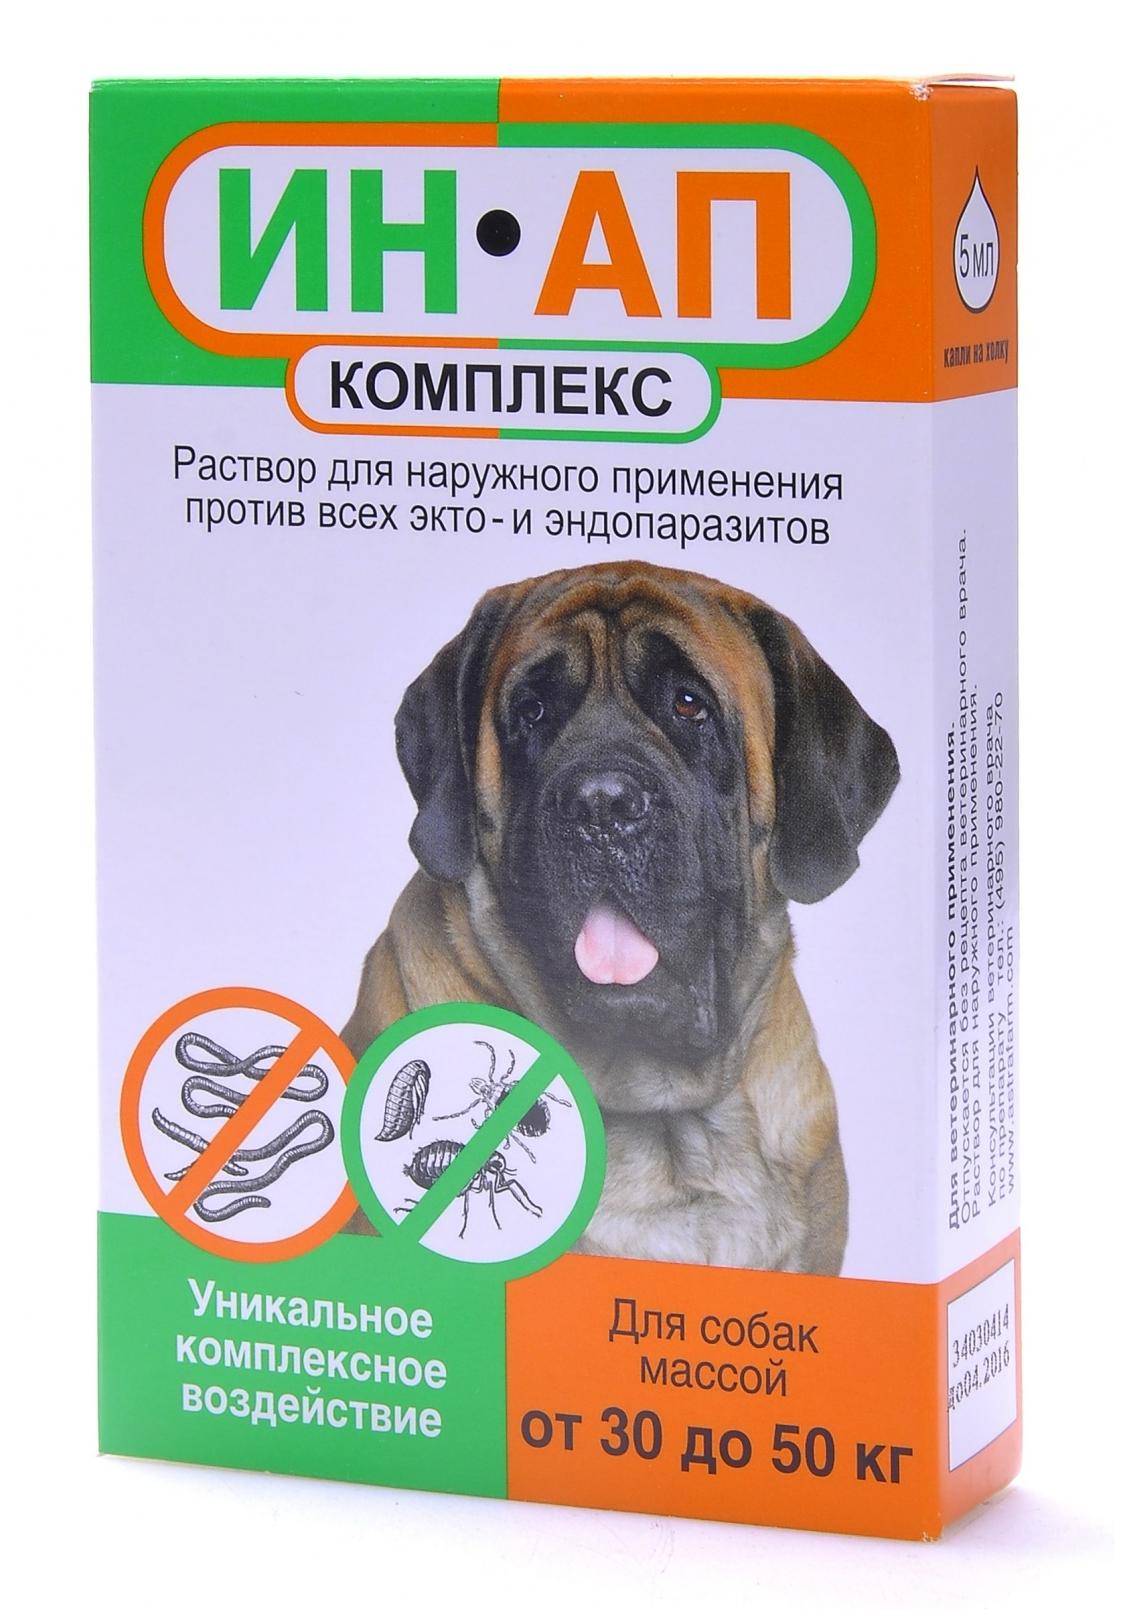 Астрафарм Капли против экто- и эндопаразитов ИН-АП для собак массой от 30 до 50 кг